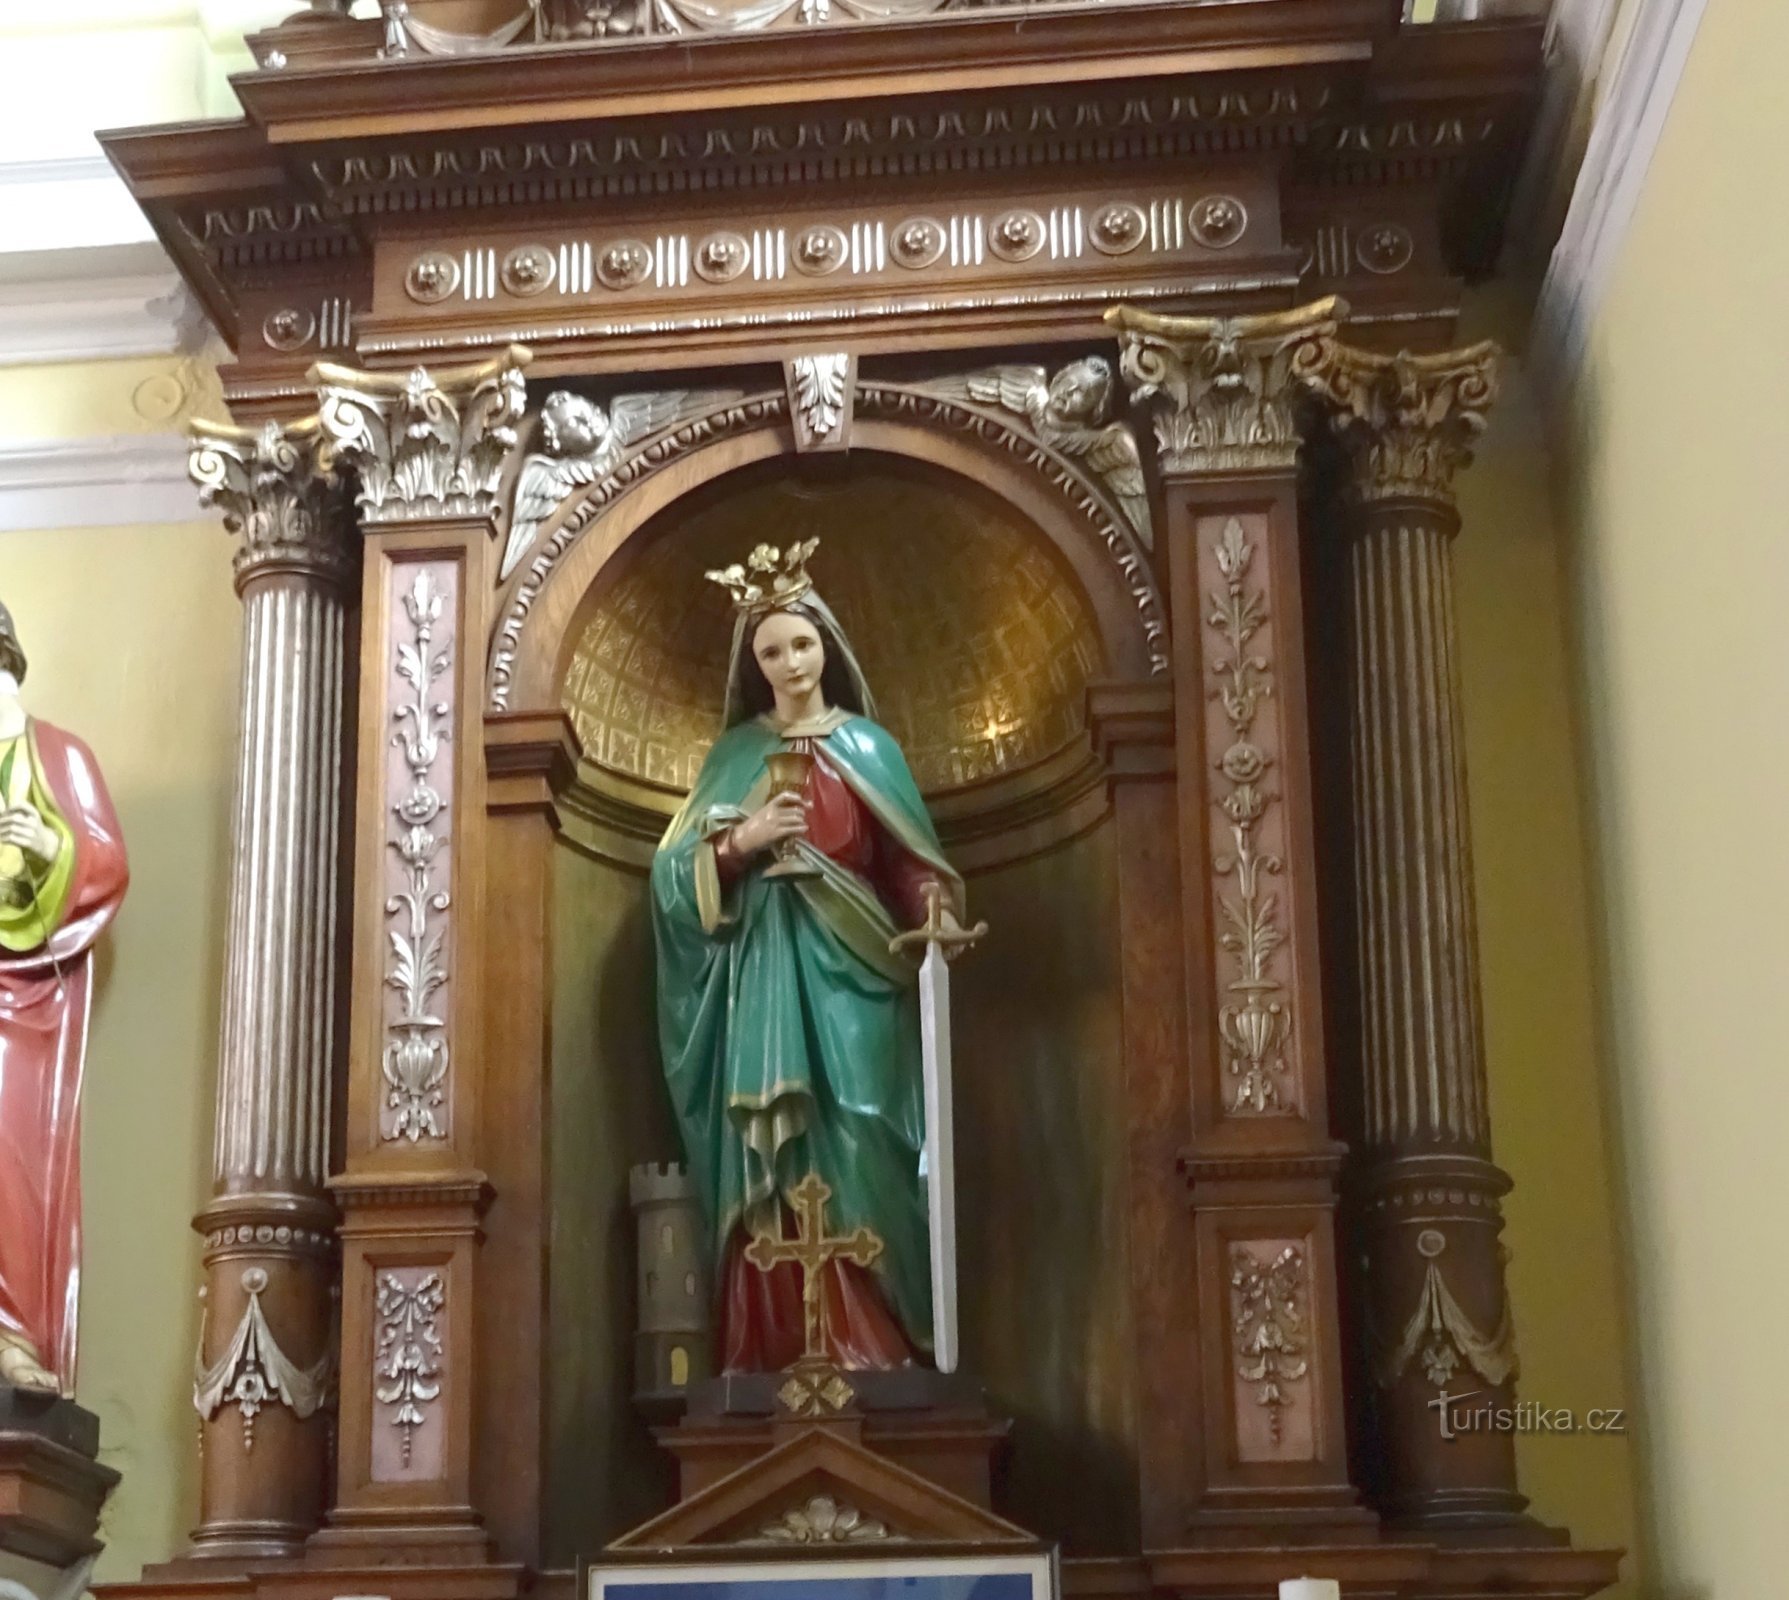 St. Barbara trên bàn thờ shunt